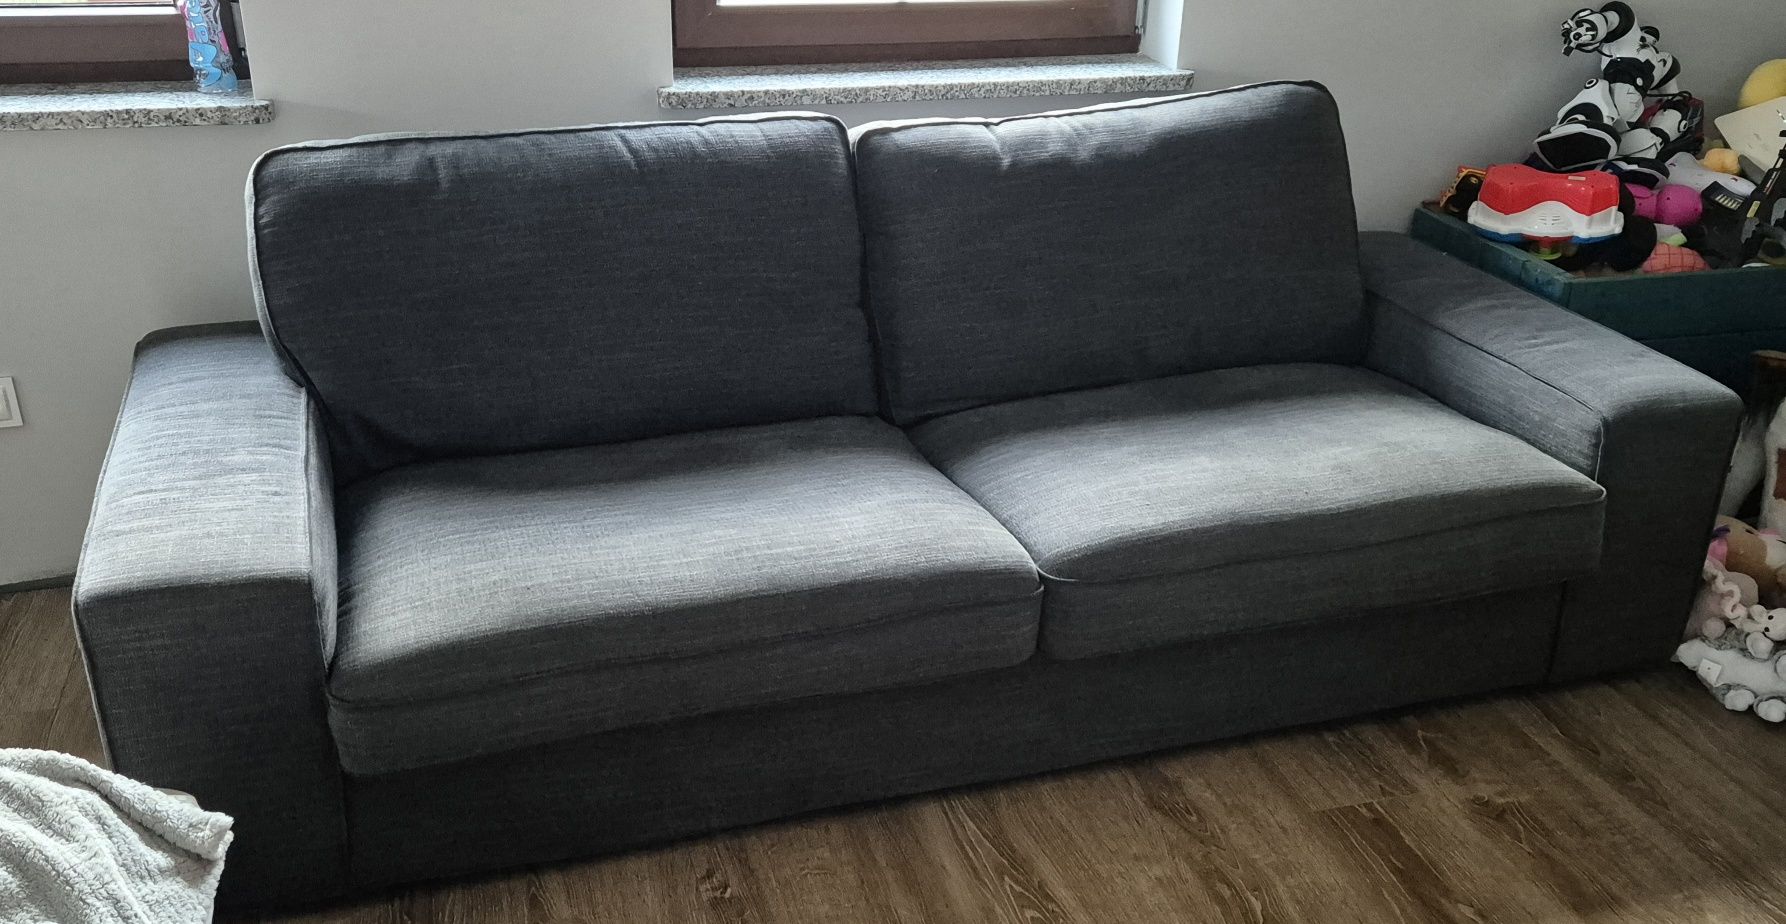 Sofa KIVIK IKEA 3 osobowa szara